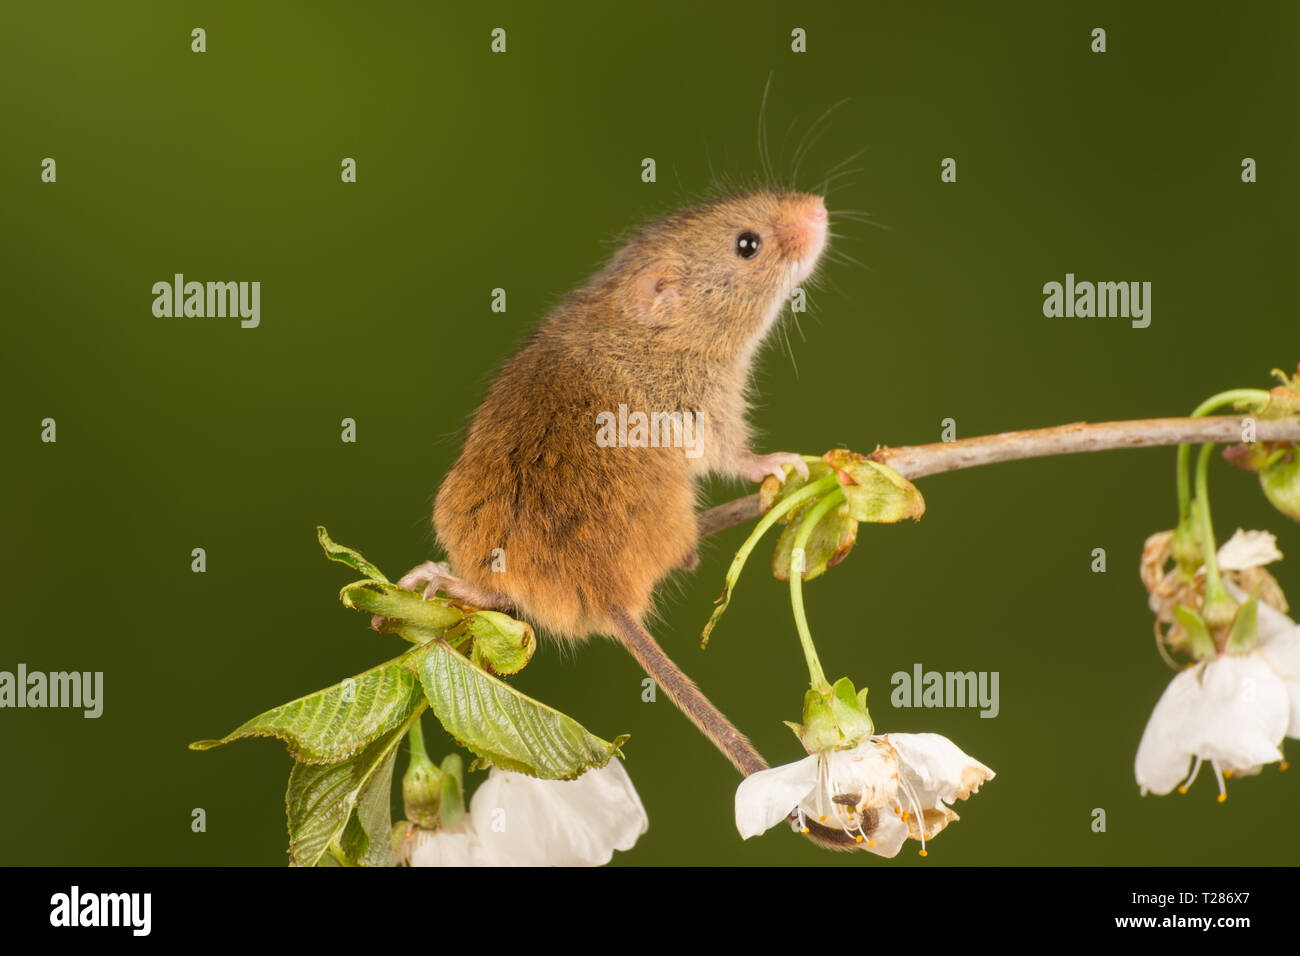 Ernte Maus (Micromys Minutus), ein kleines Säugetier oder nagetierarten. Tier niedlich. Stockfoto